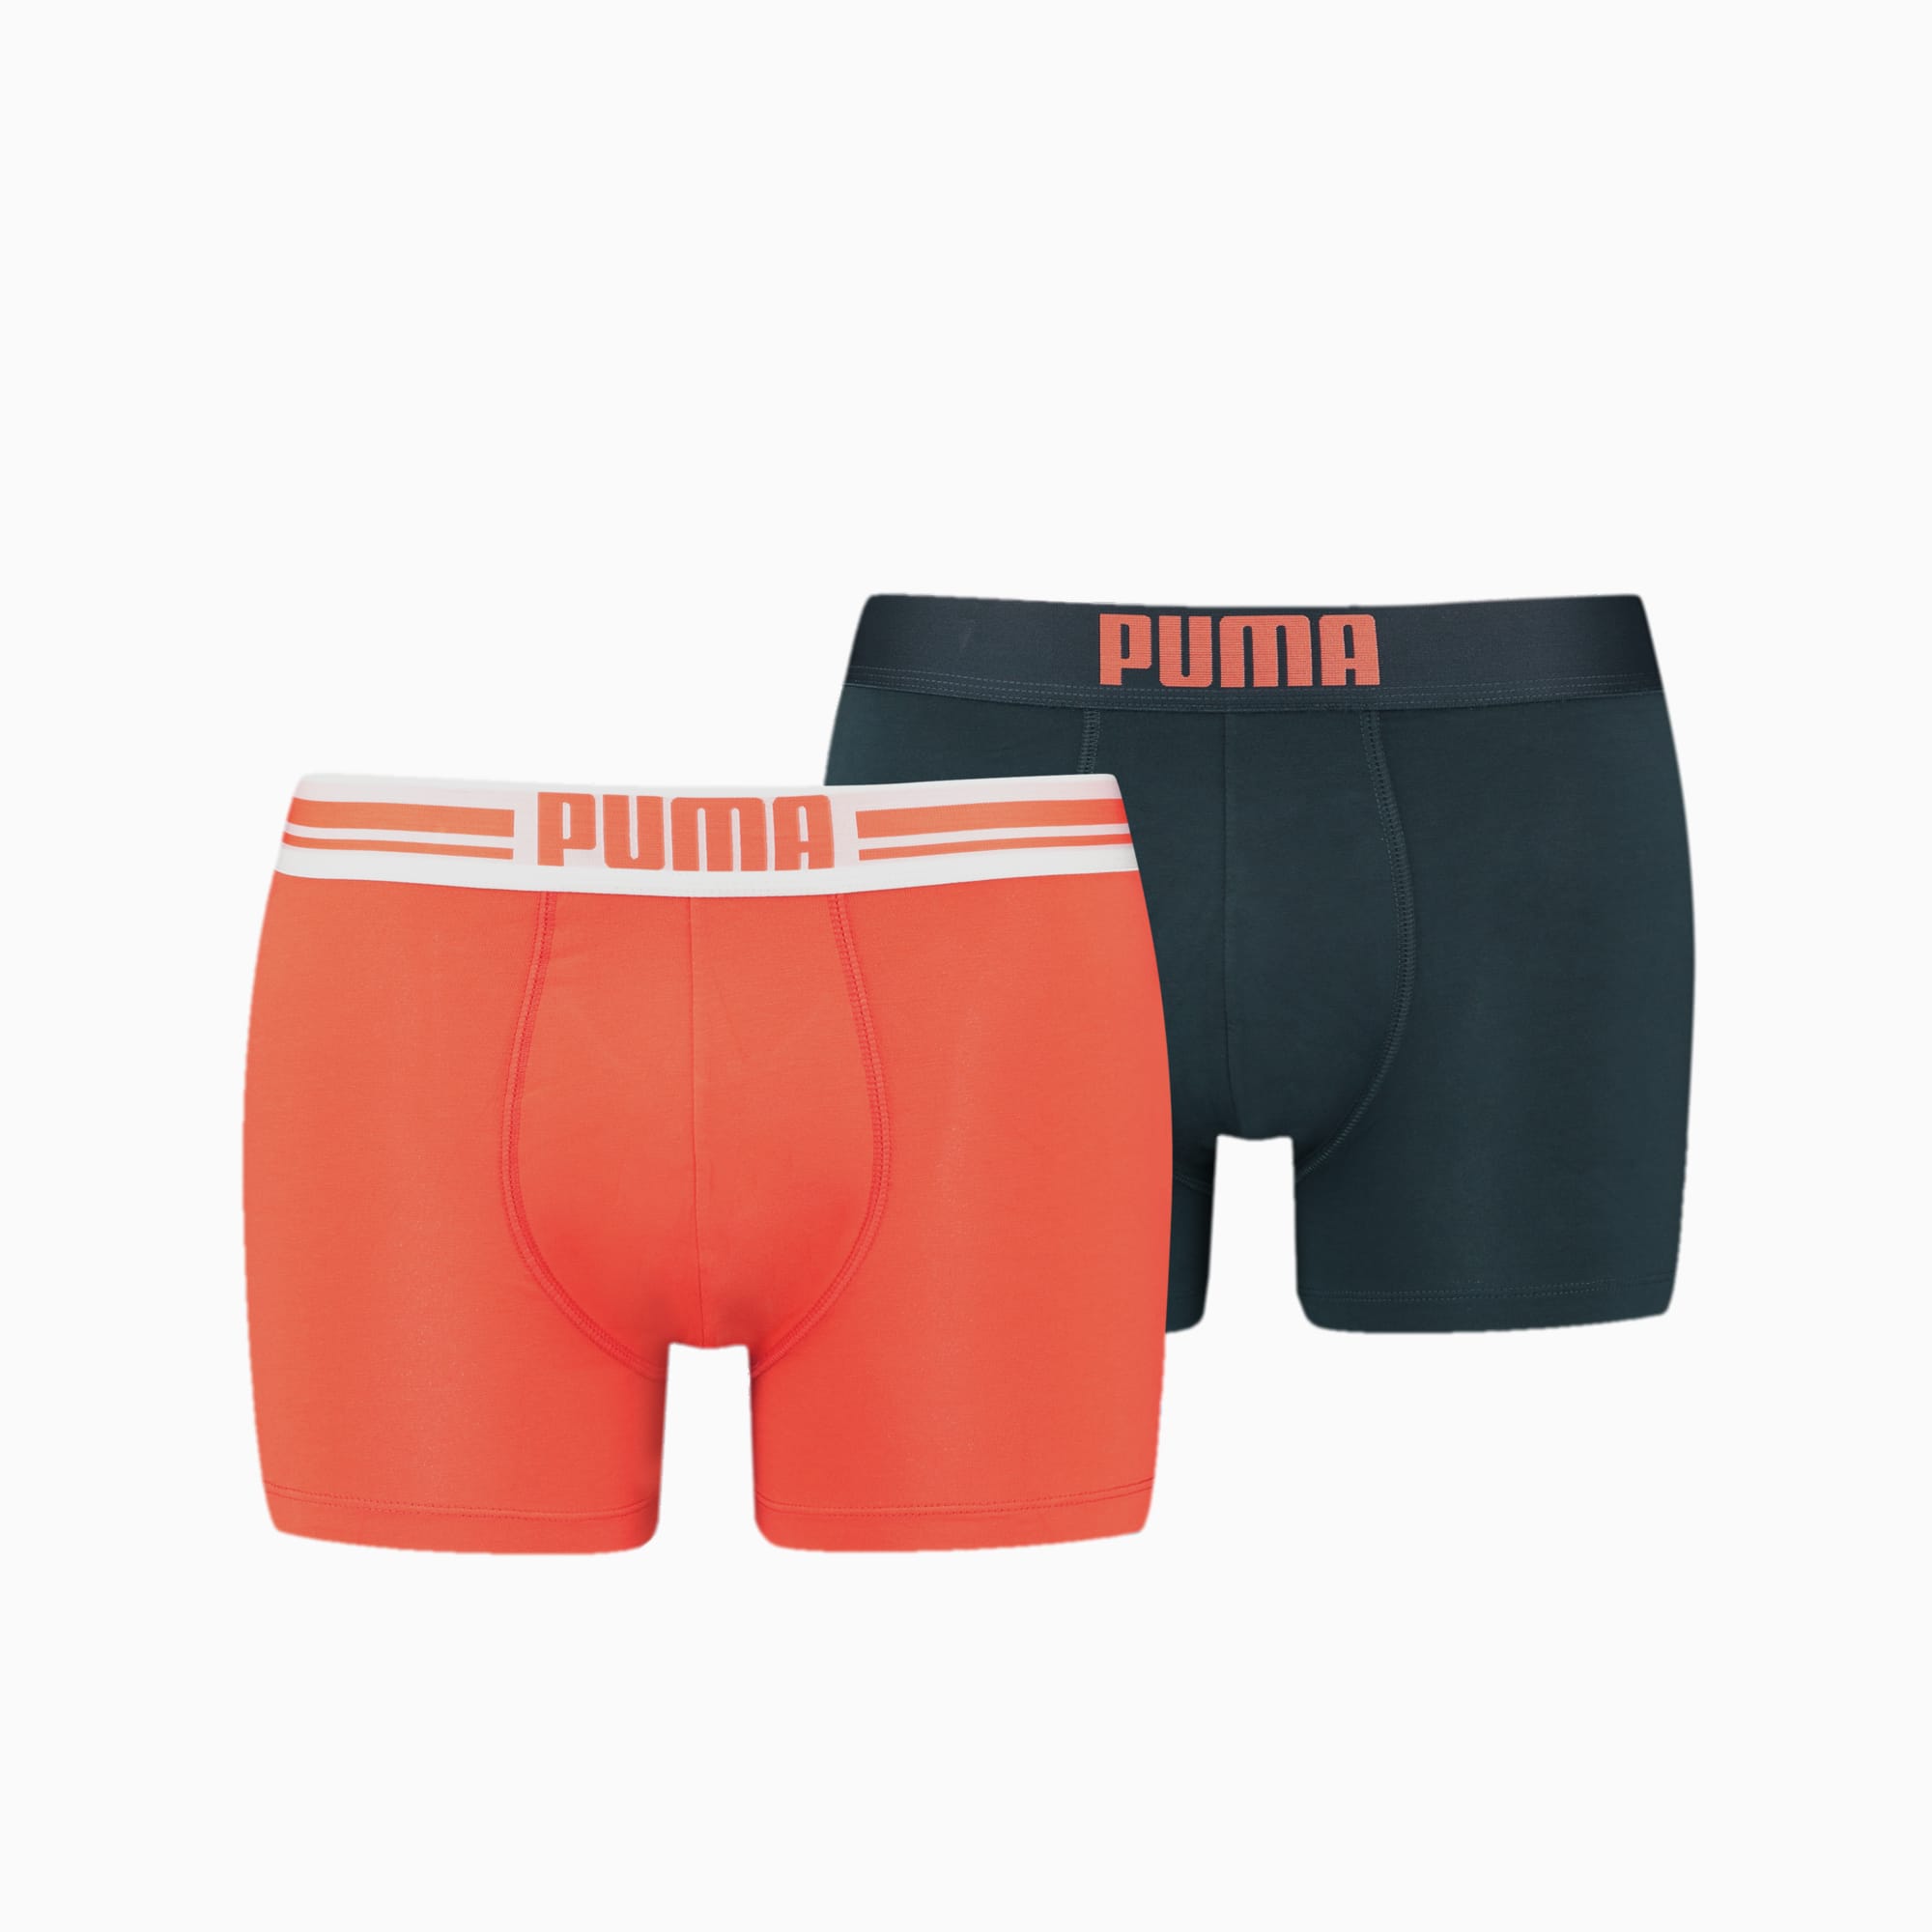 Boxer PUMA Placed Logo Uomo (confezione Da 2), Arancione/Altro